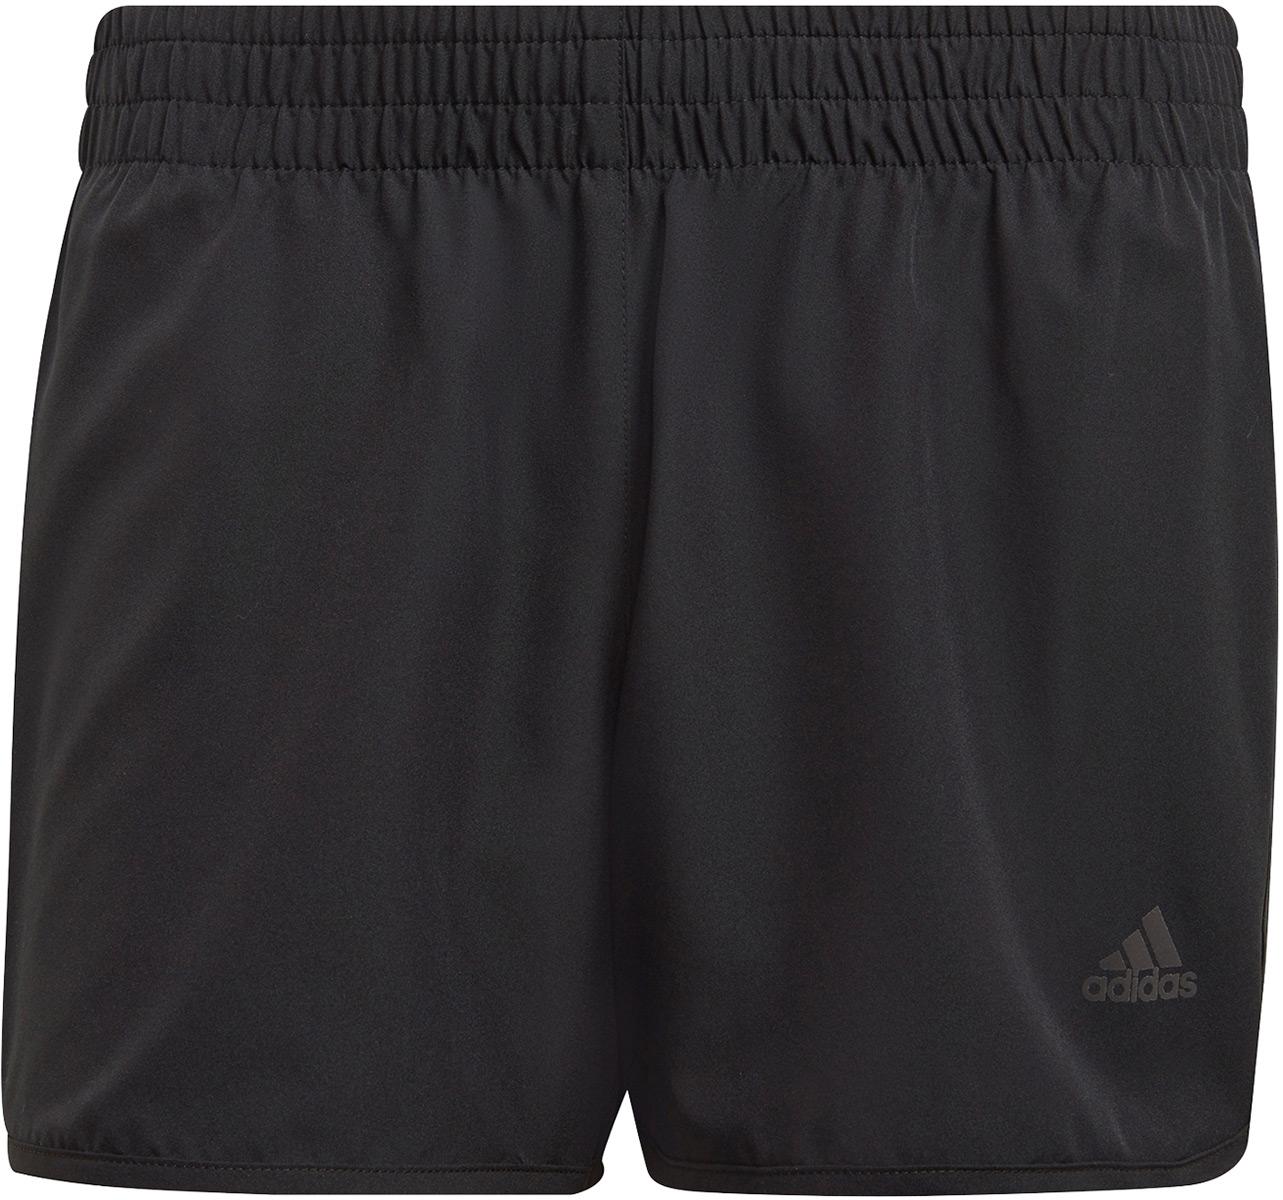 Adidas M20 4 Inch Running Shorts - Black/black